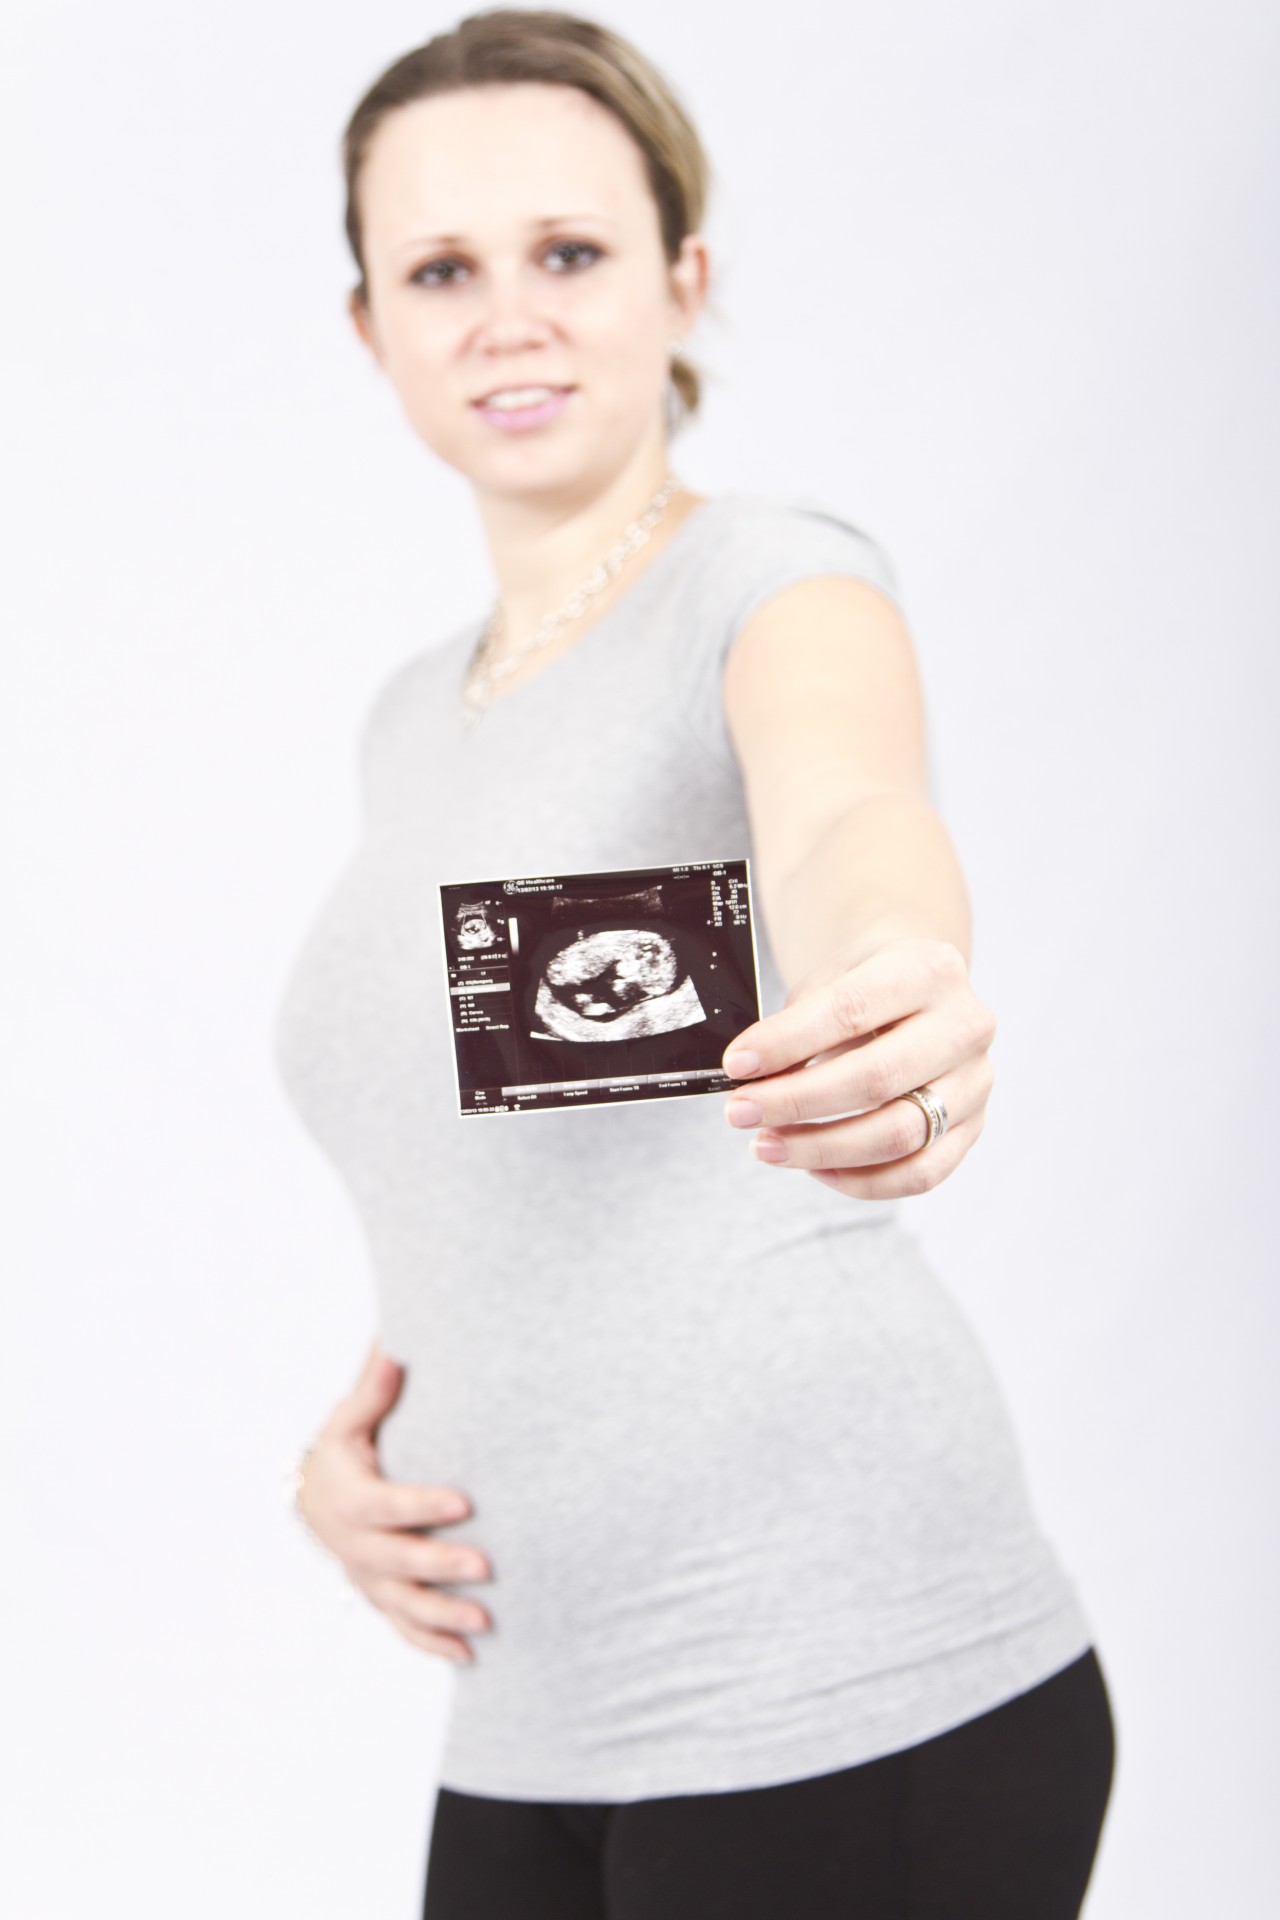 Schwangere Frau mit Scan-Bild